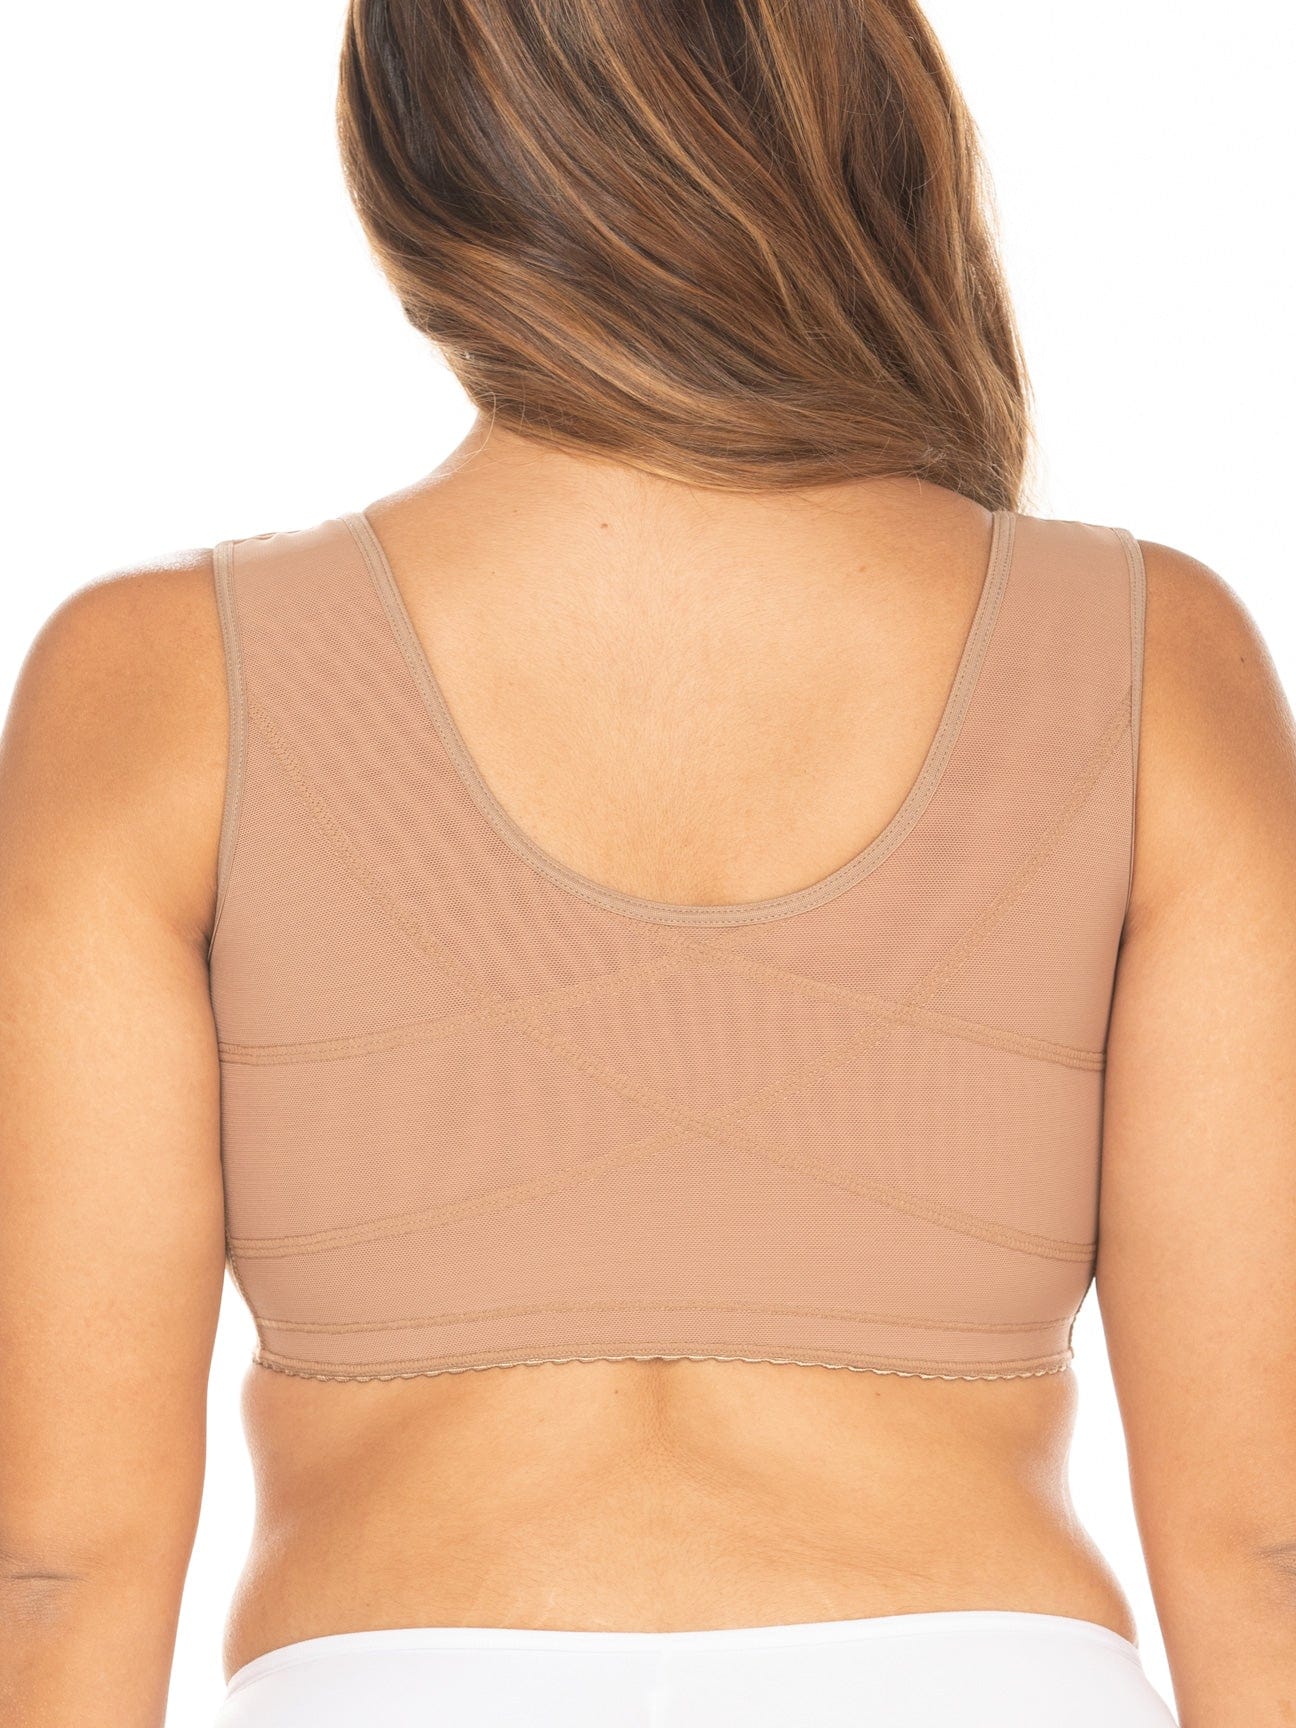 Back view of the beige shapewear bra.